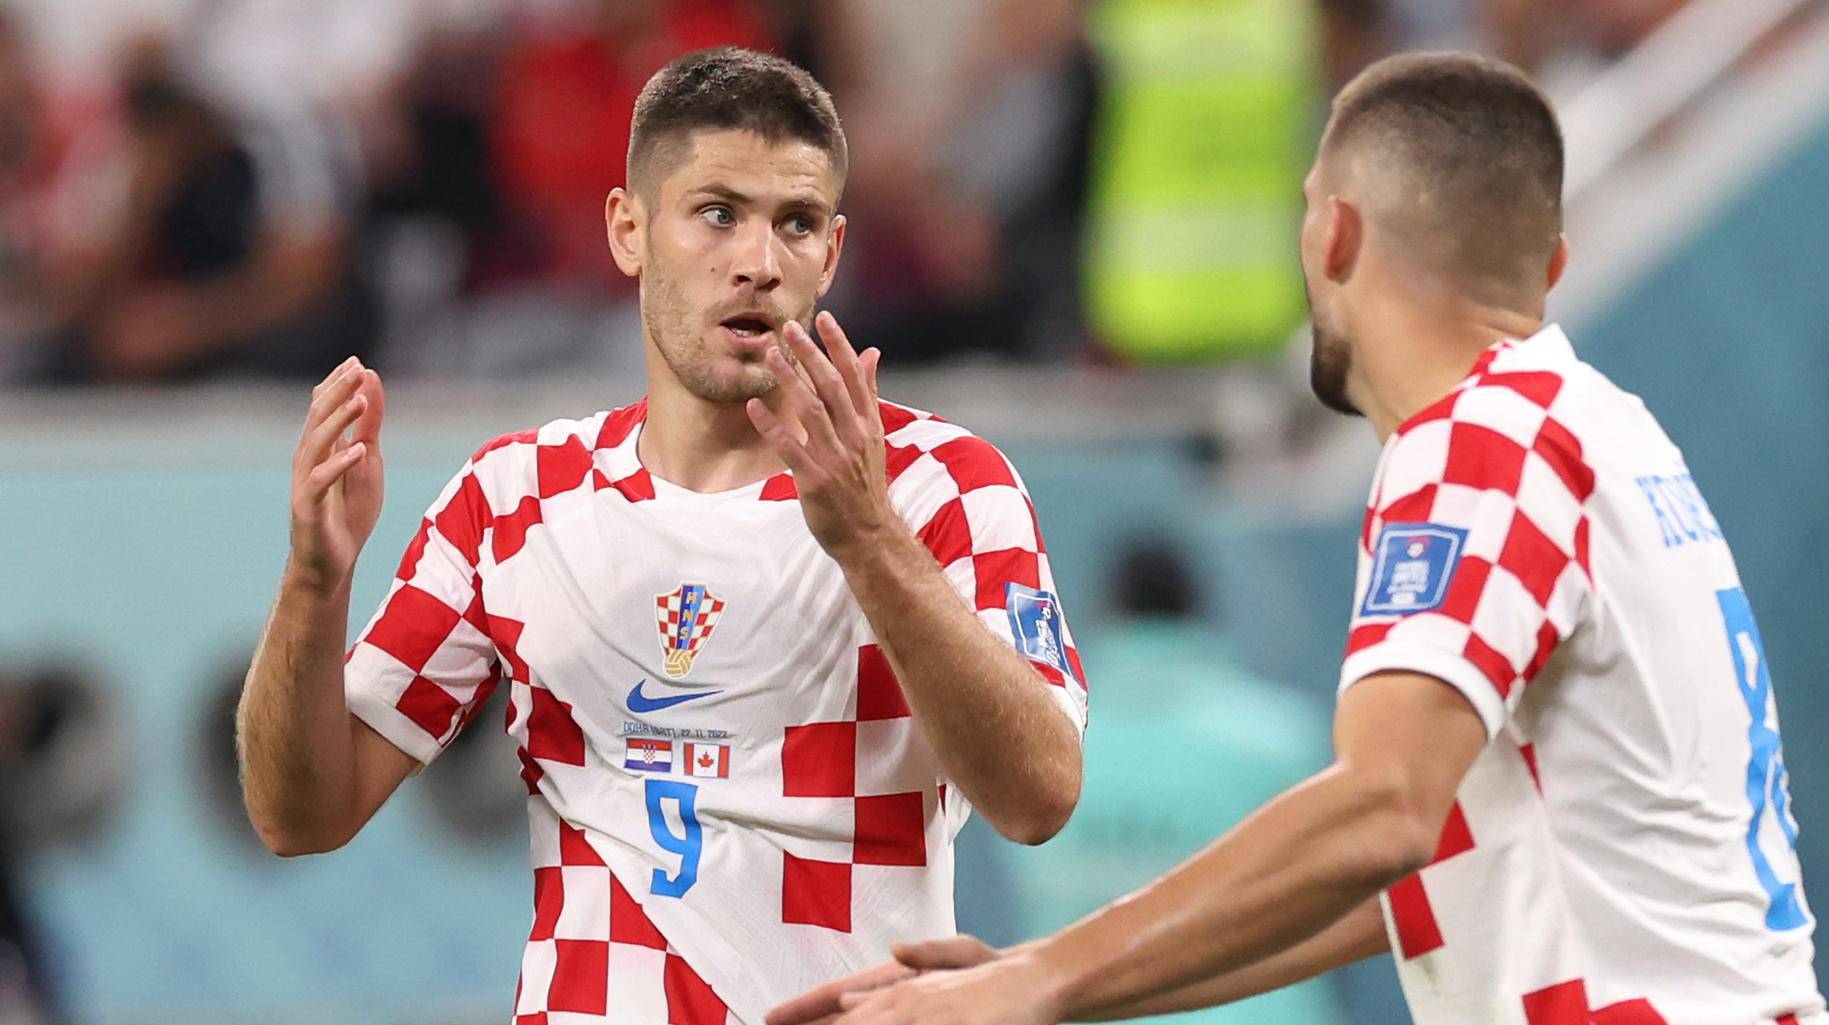 KATAR 2022 - Razočaranje Kramarića nakon što mu je poništen gol tijekom utakmice Hrvatska - Kanada